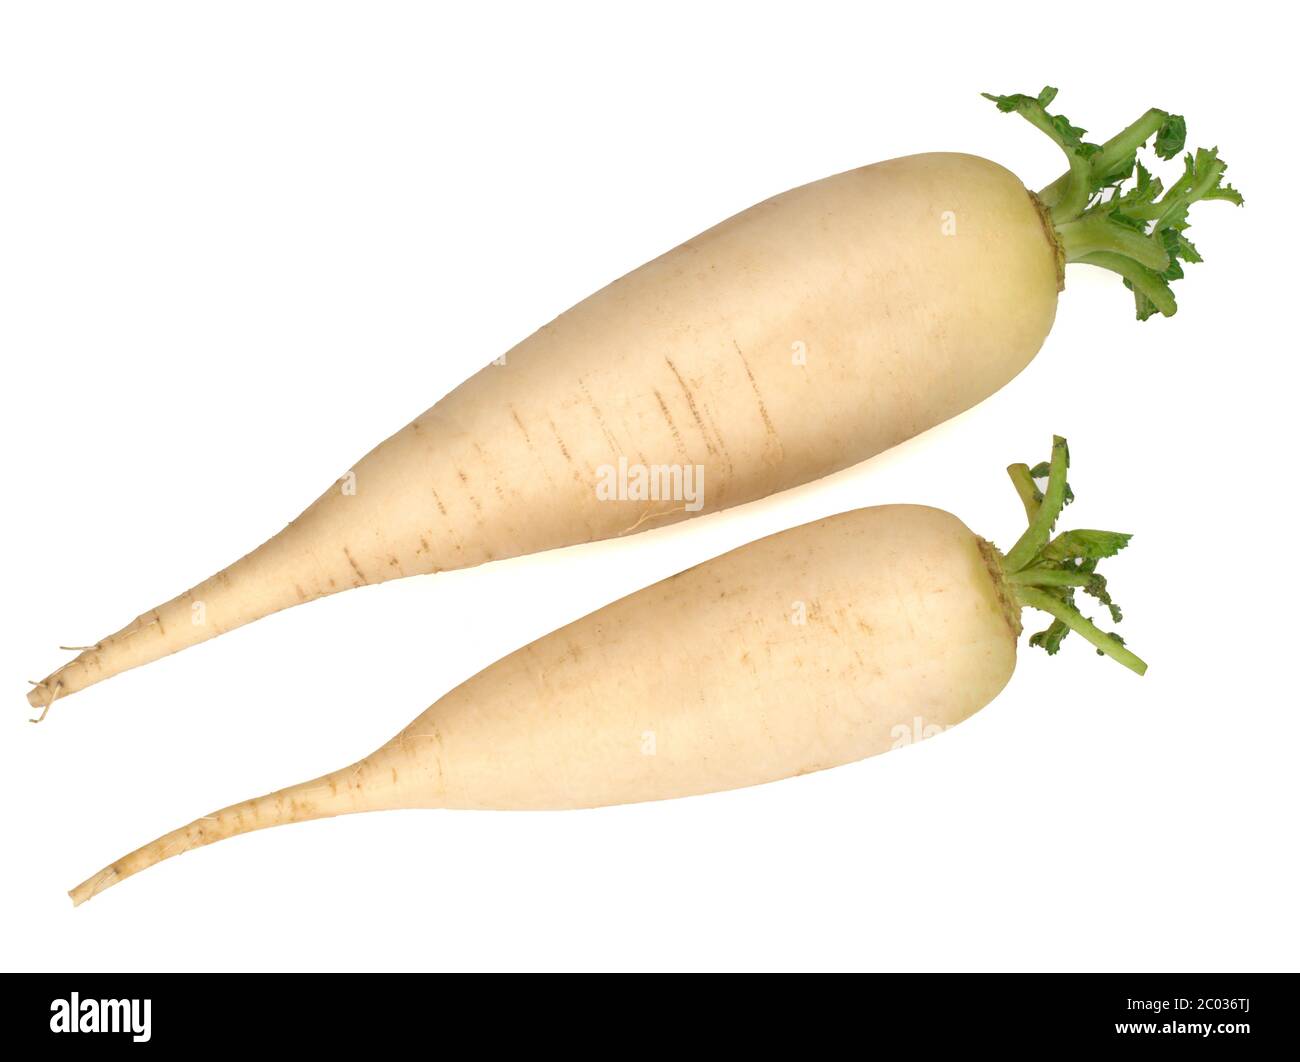 Two fresh daikon radishes isolated on white background Stock Photo